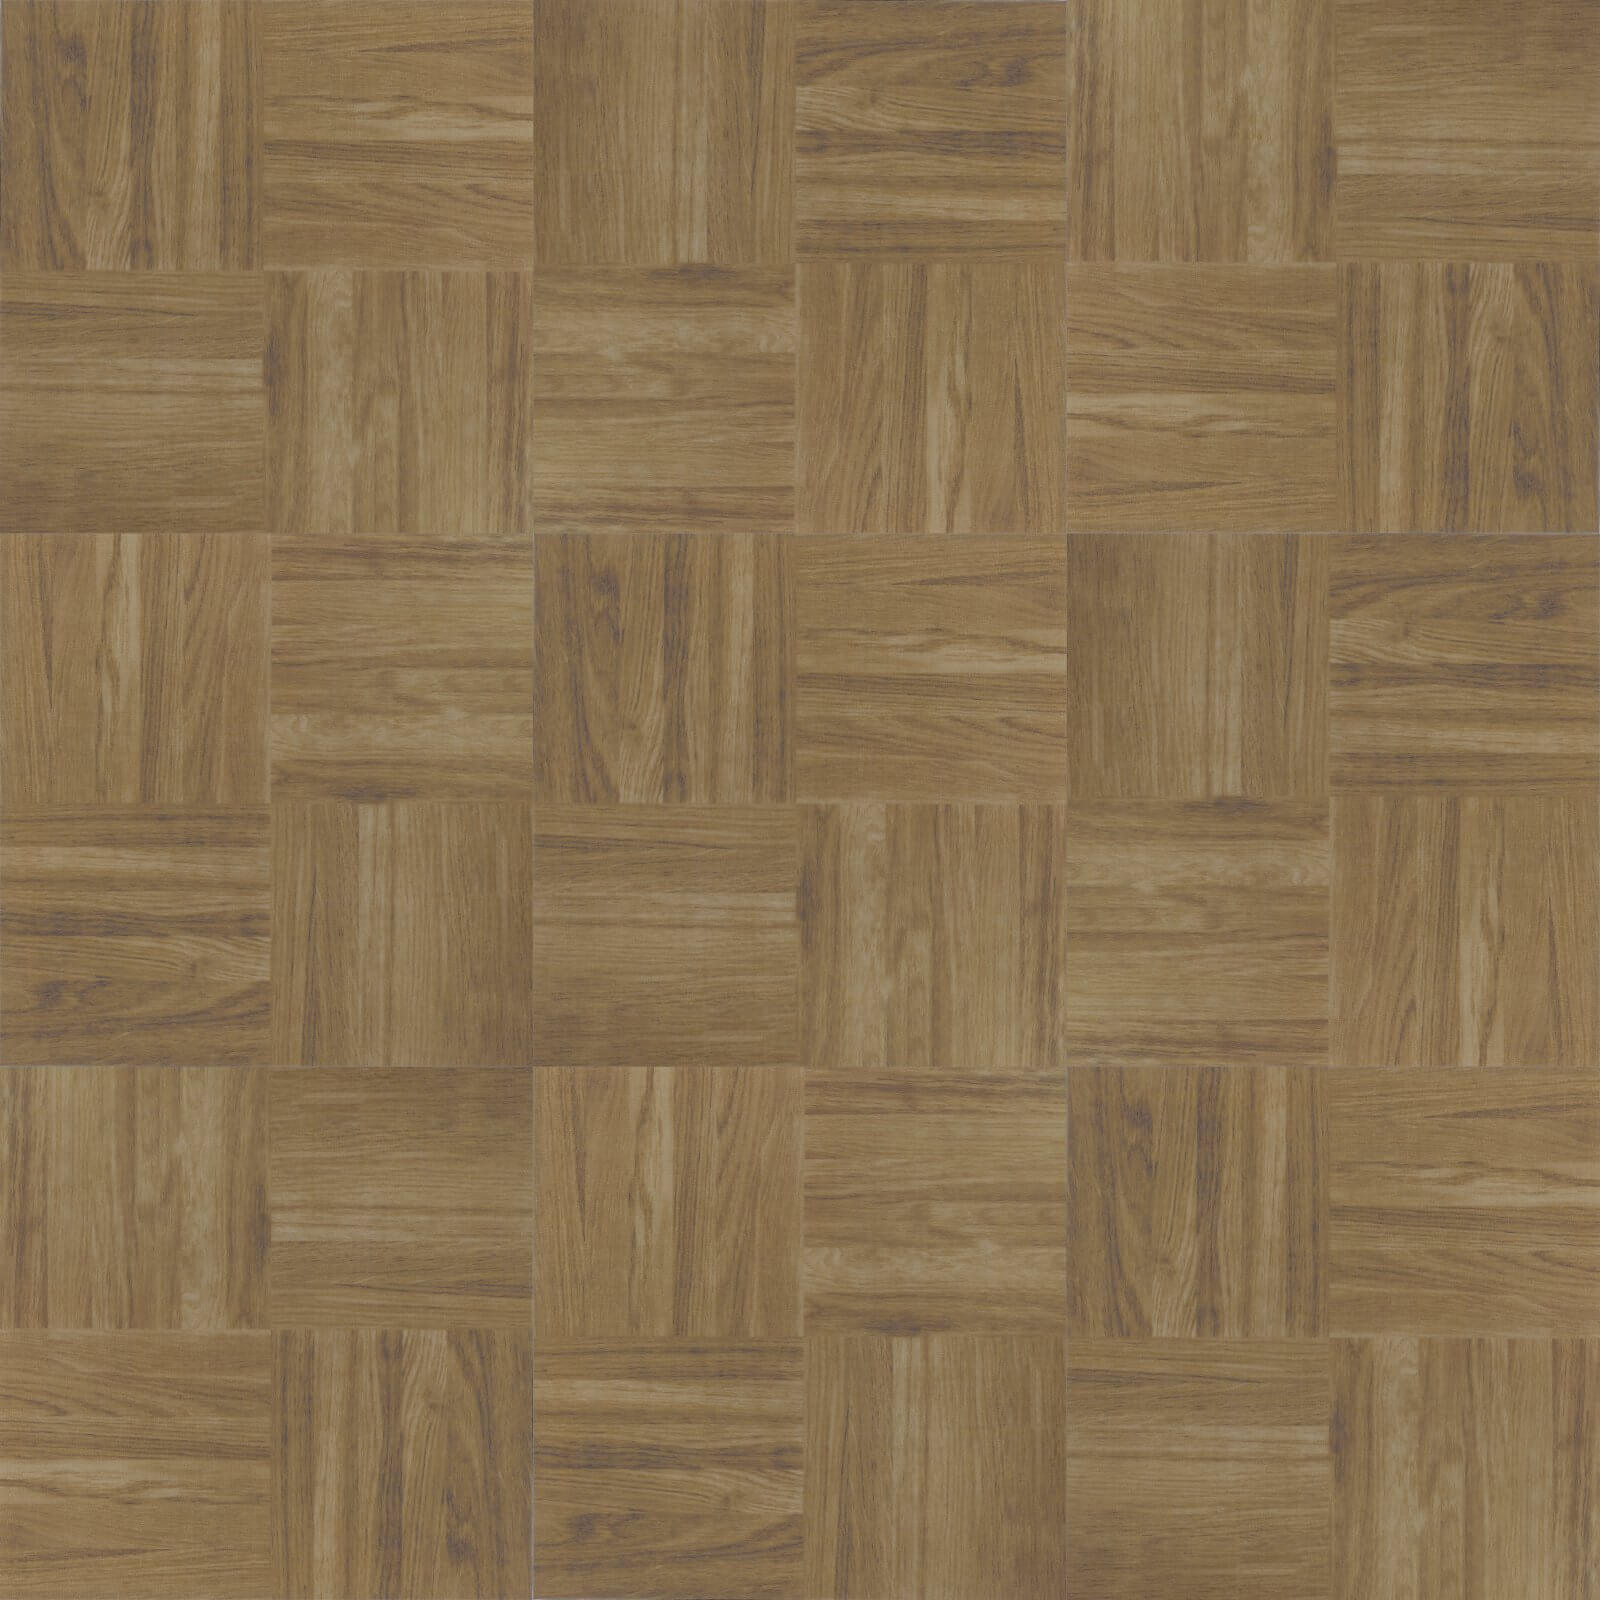 Cross Wood Vinyl Floor Tiles 305 x 305mm - 1sqm Pack